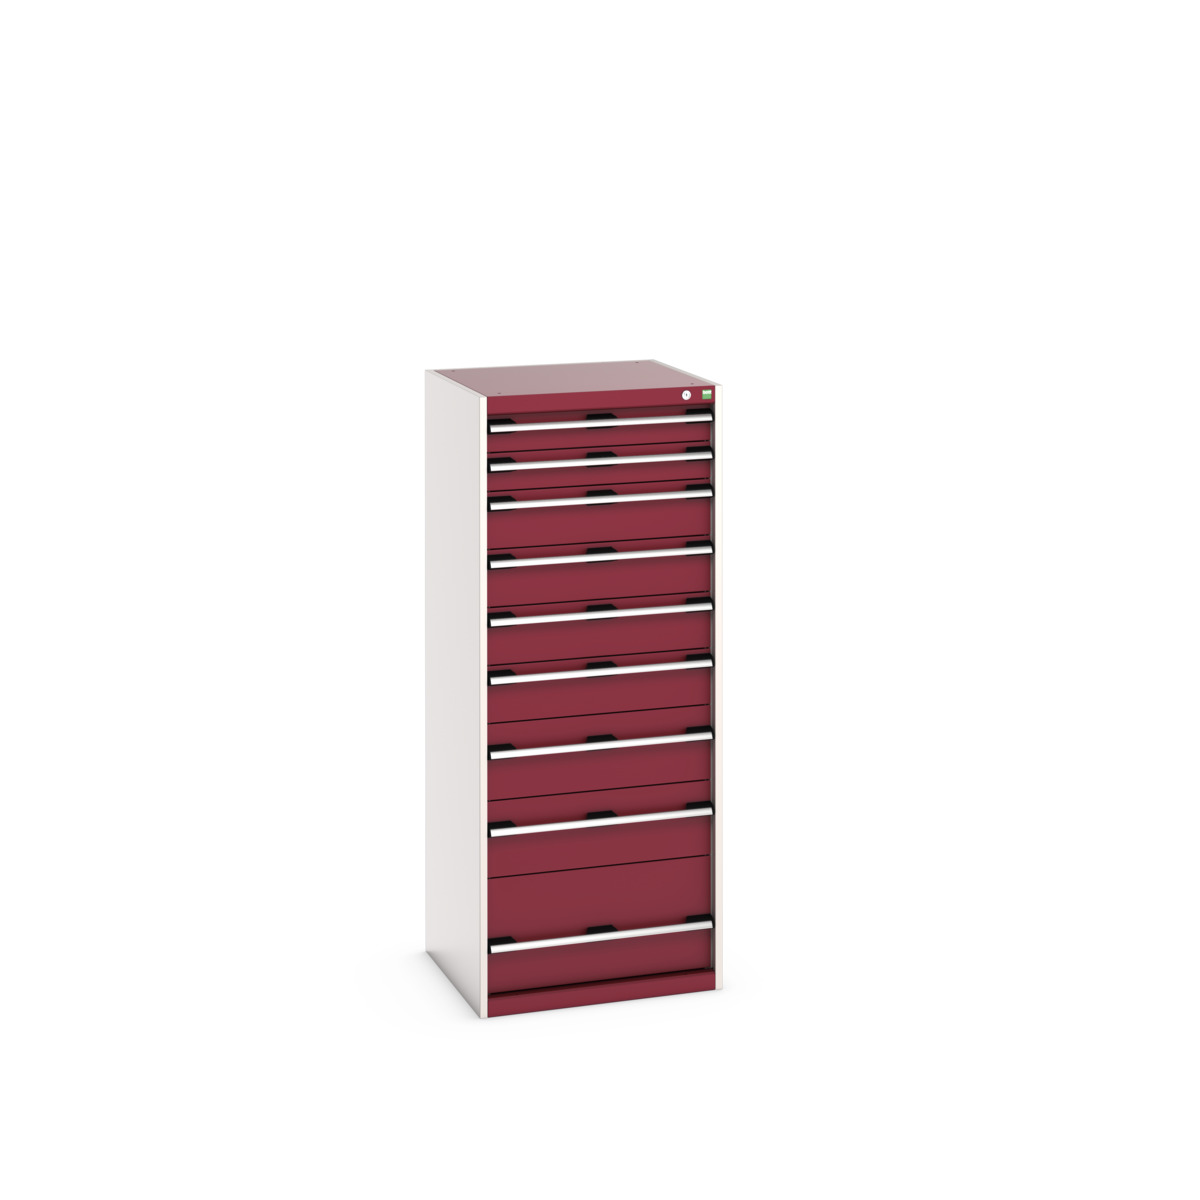 40019154.24V - cubio drawer cabinet